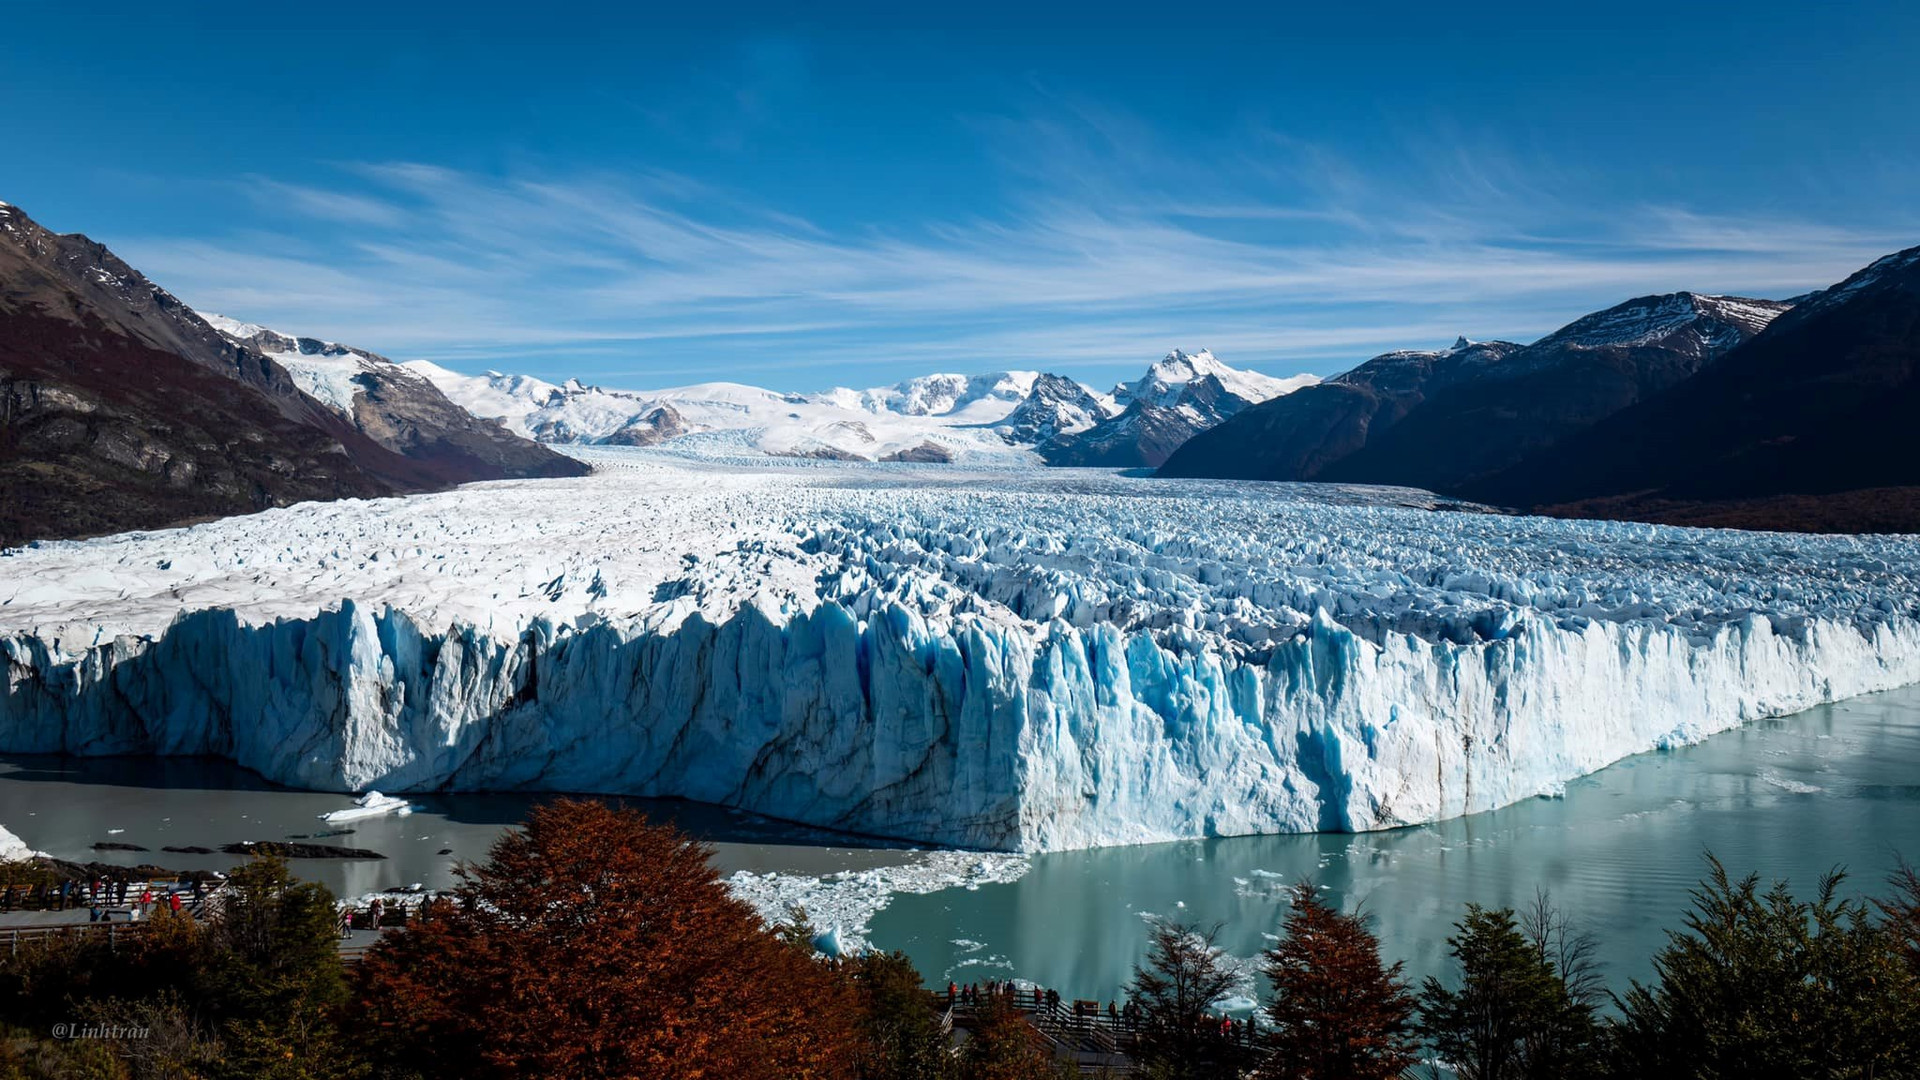 Nhật ký lữ hành Argentina – P.18: Perito Moreno - Kỳ quan của thế giới băng